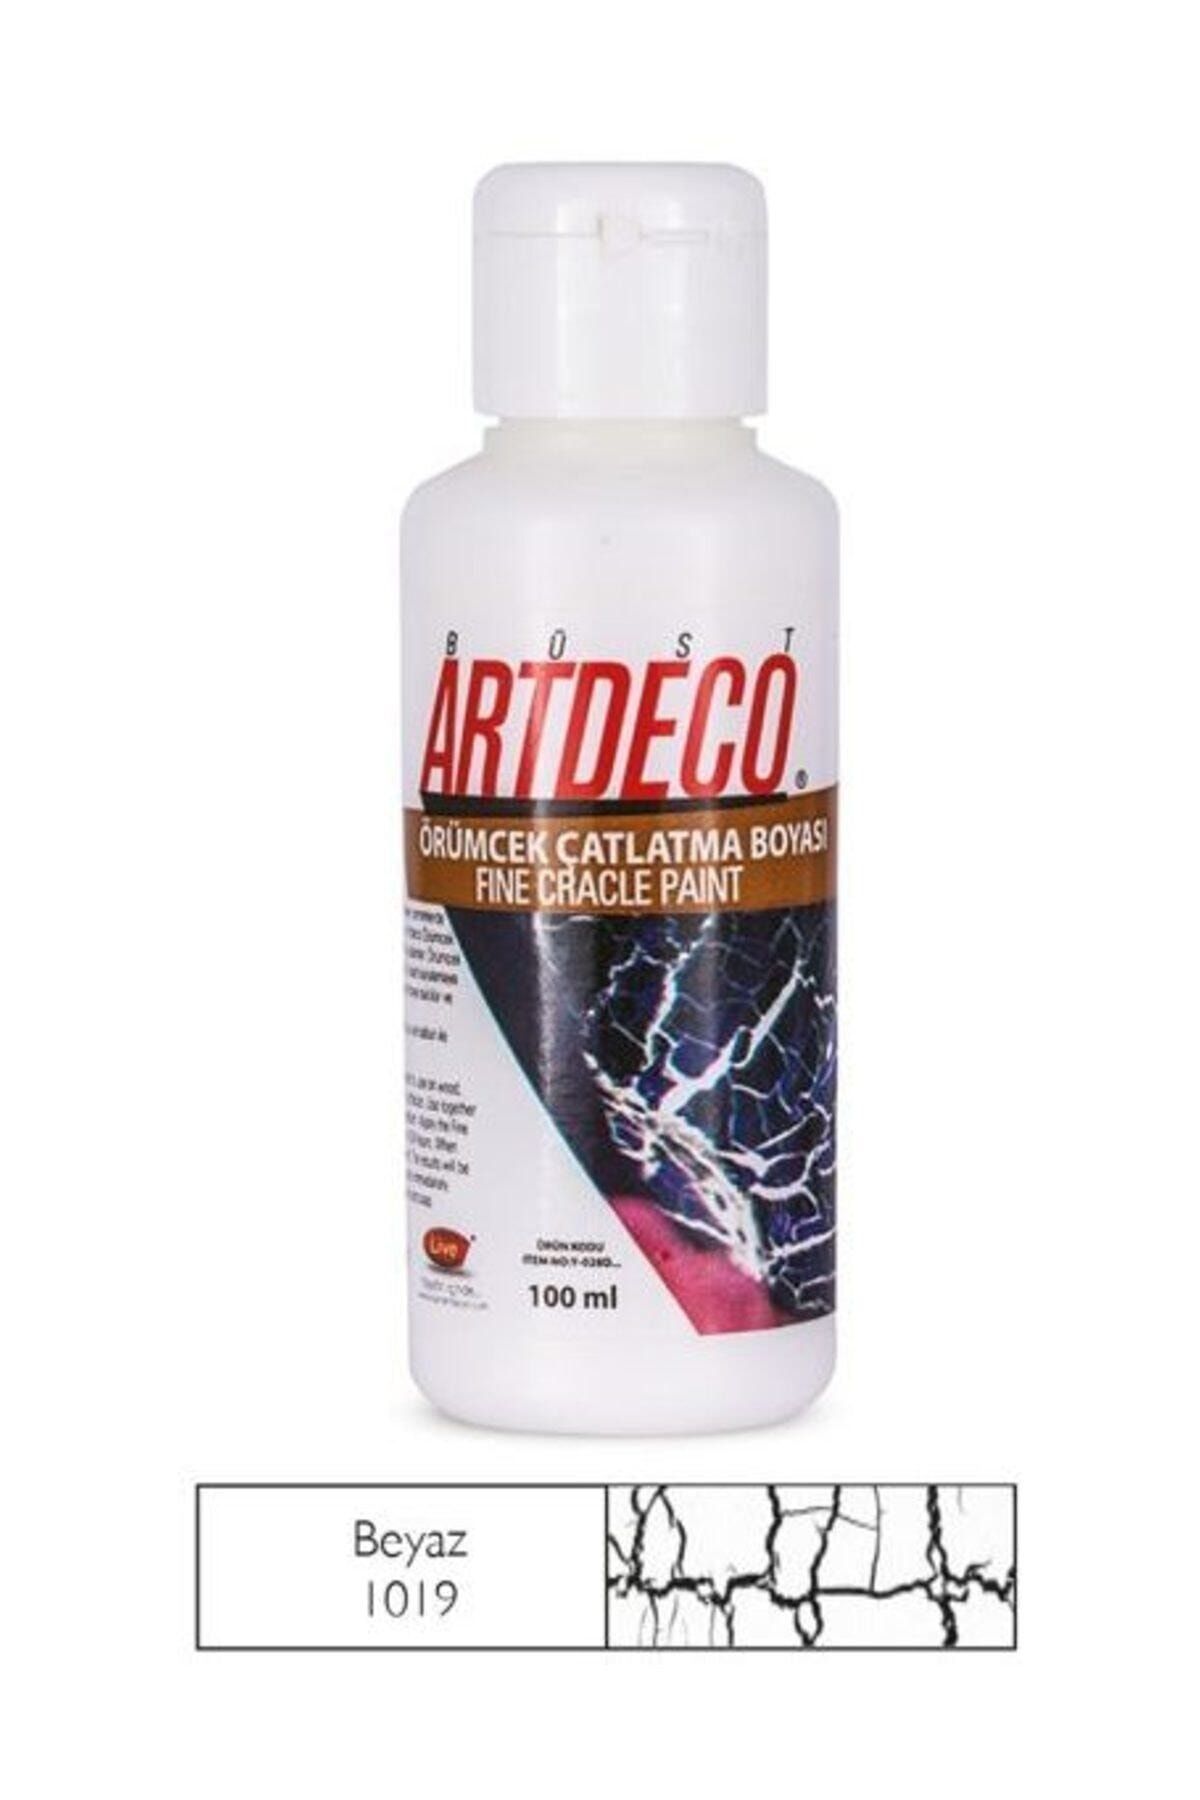 Artdeco Örümcek Çatlatma Boyası 1019 Beyaz